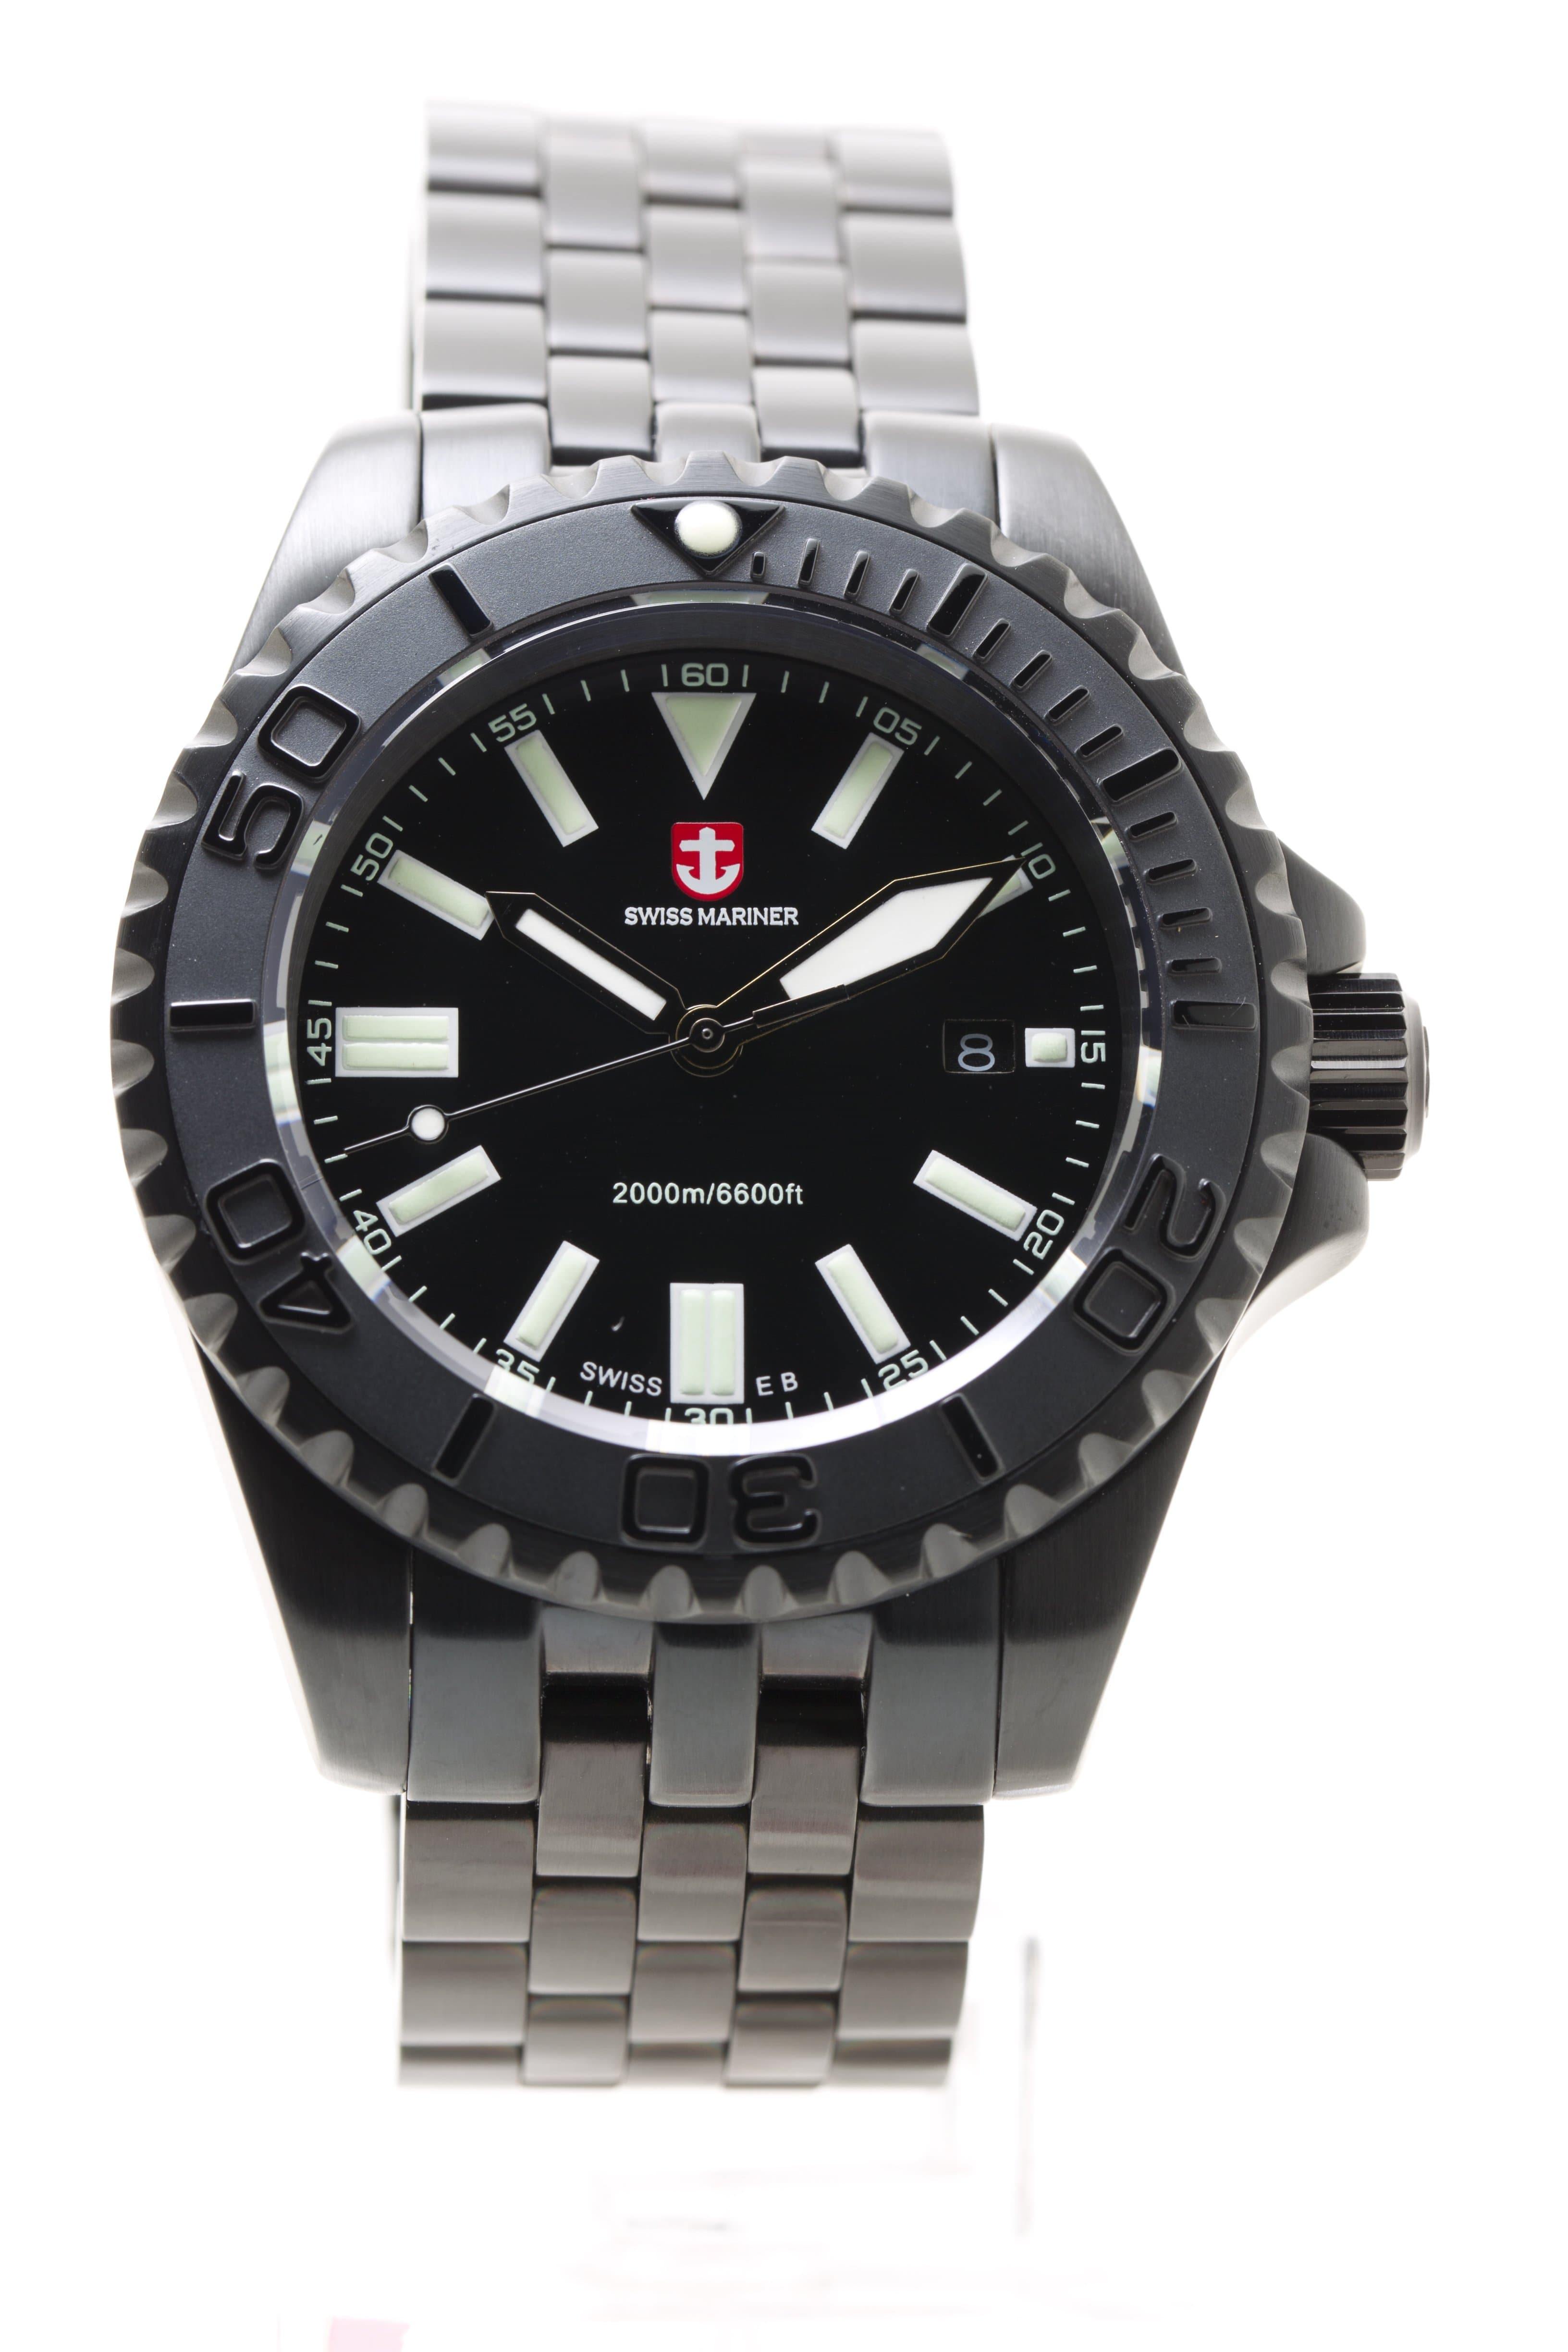 Swiss Mariner Stealth Series Men's Watch SG8299K74A-BKBKGN - Prestige